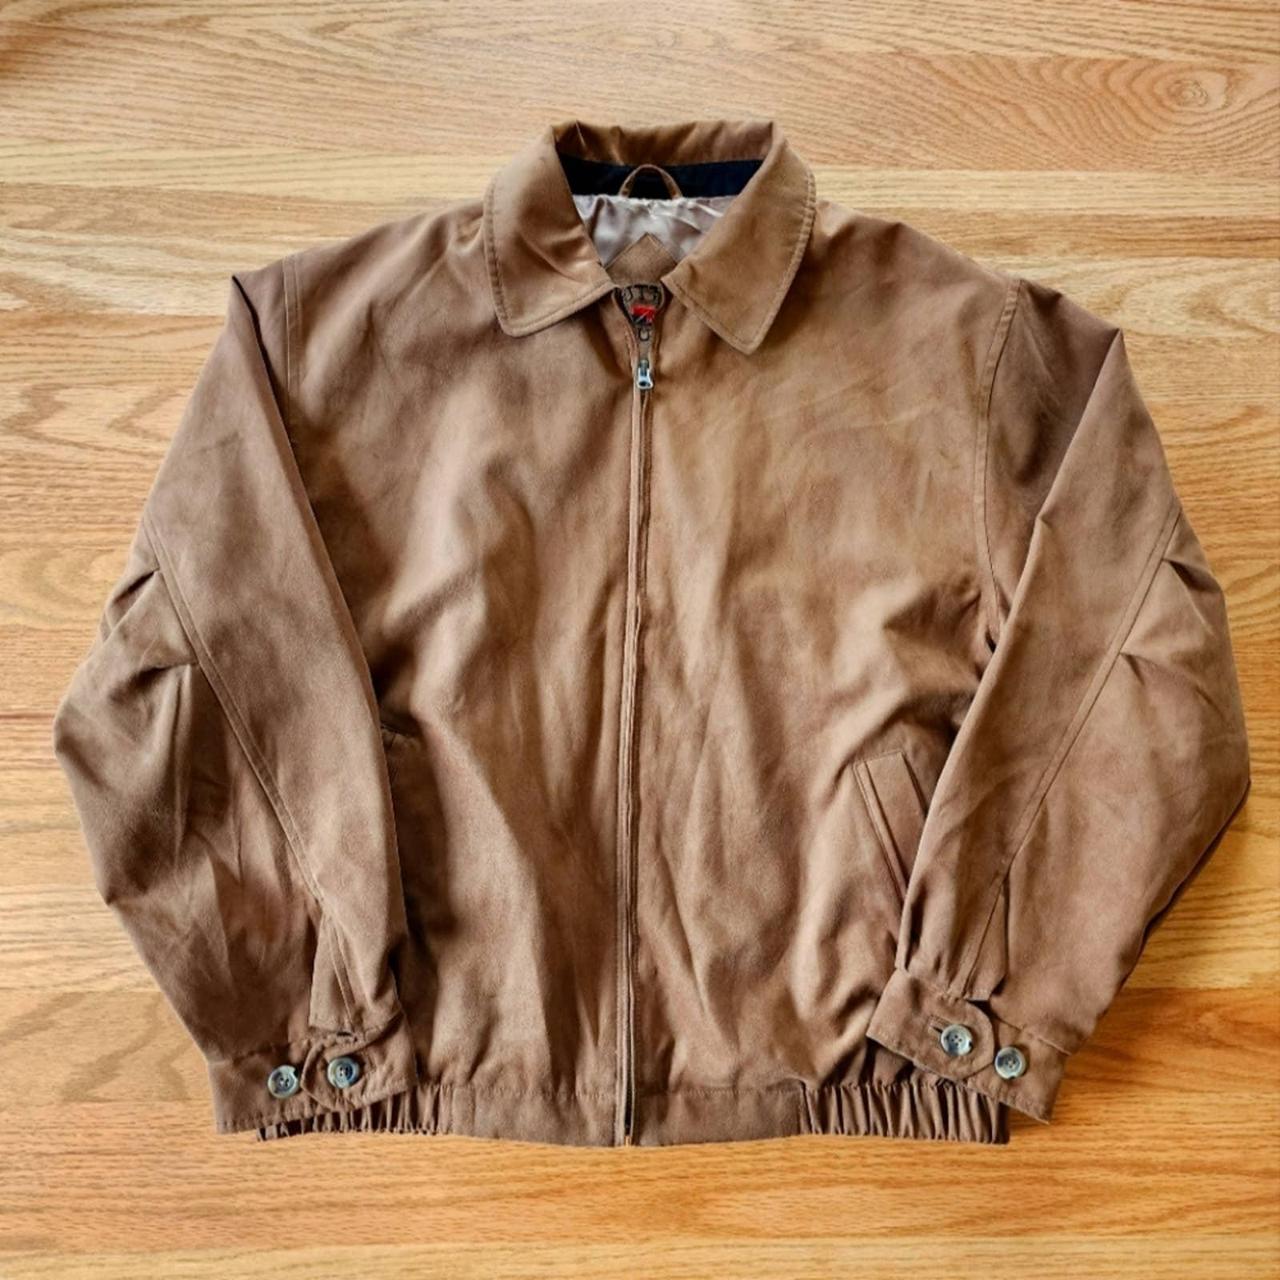 Cutter & Buck Men's Brown Jacket